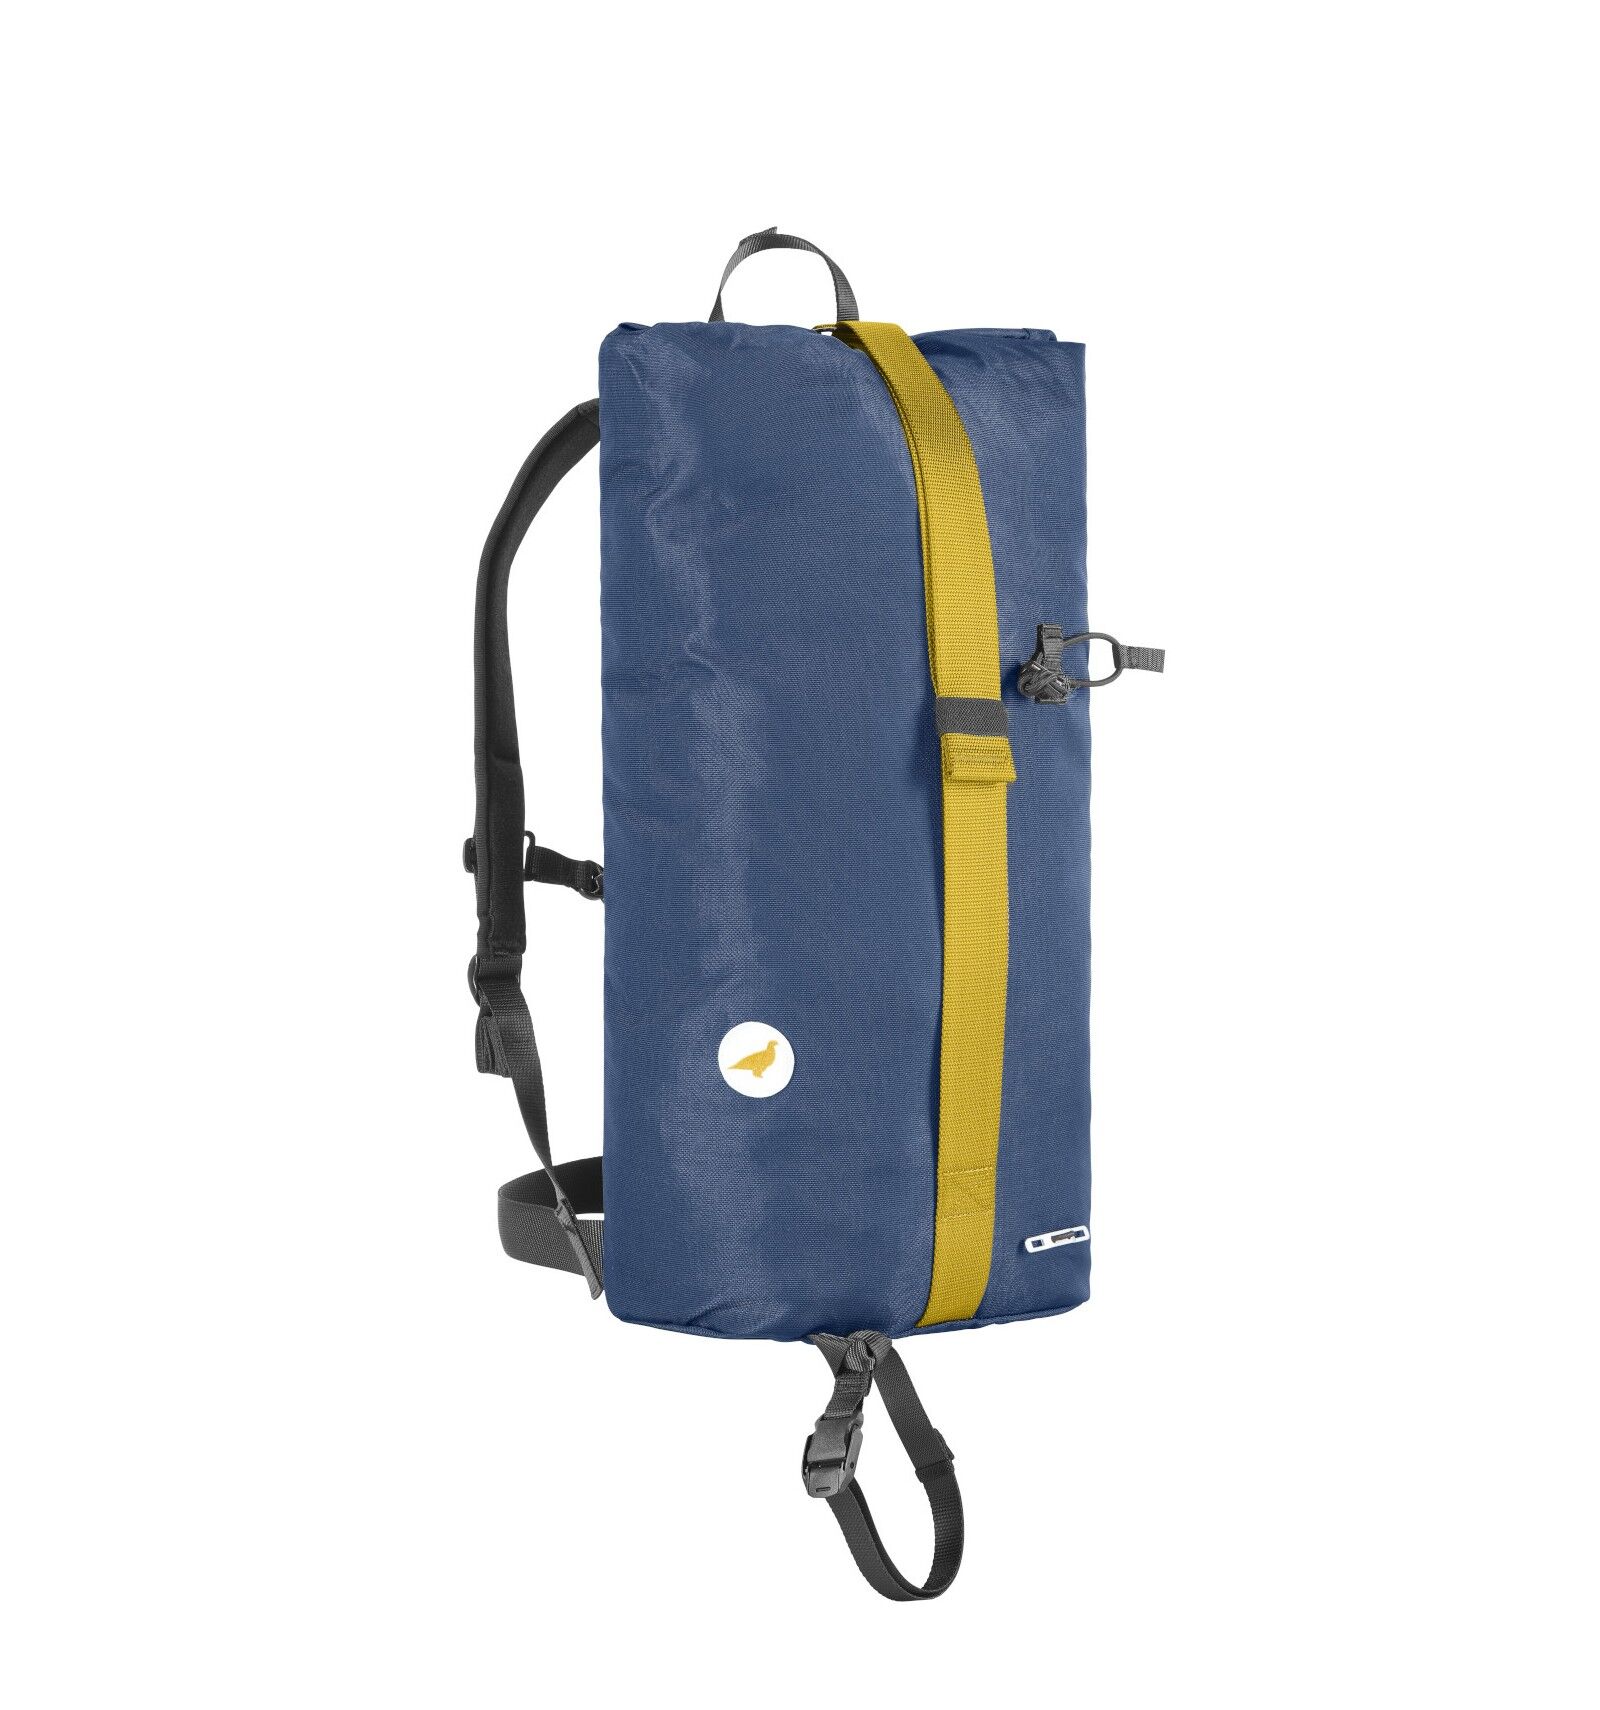 Lagoped Kiiruna - Outdoor backpack